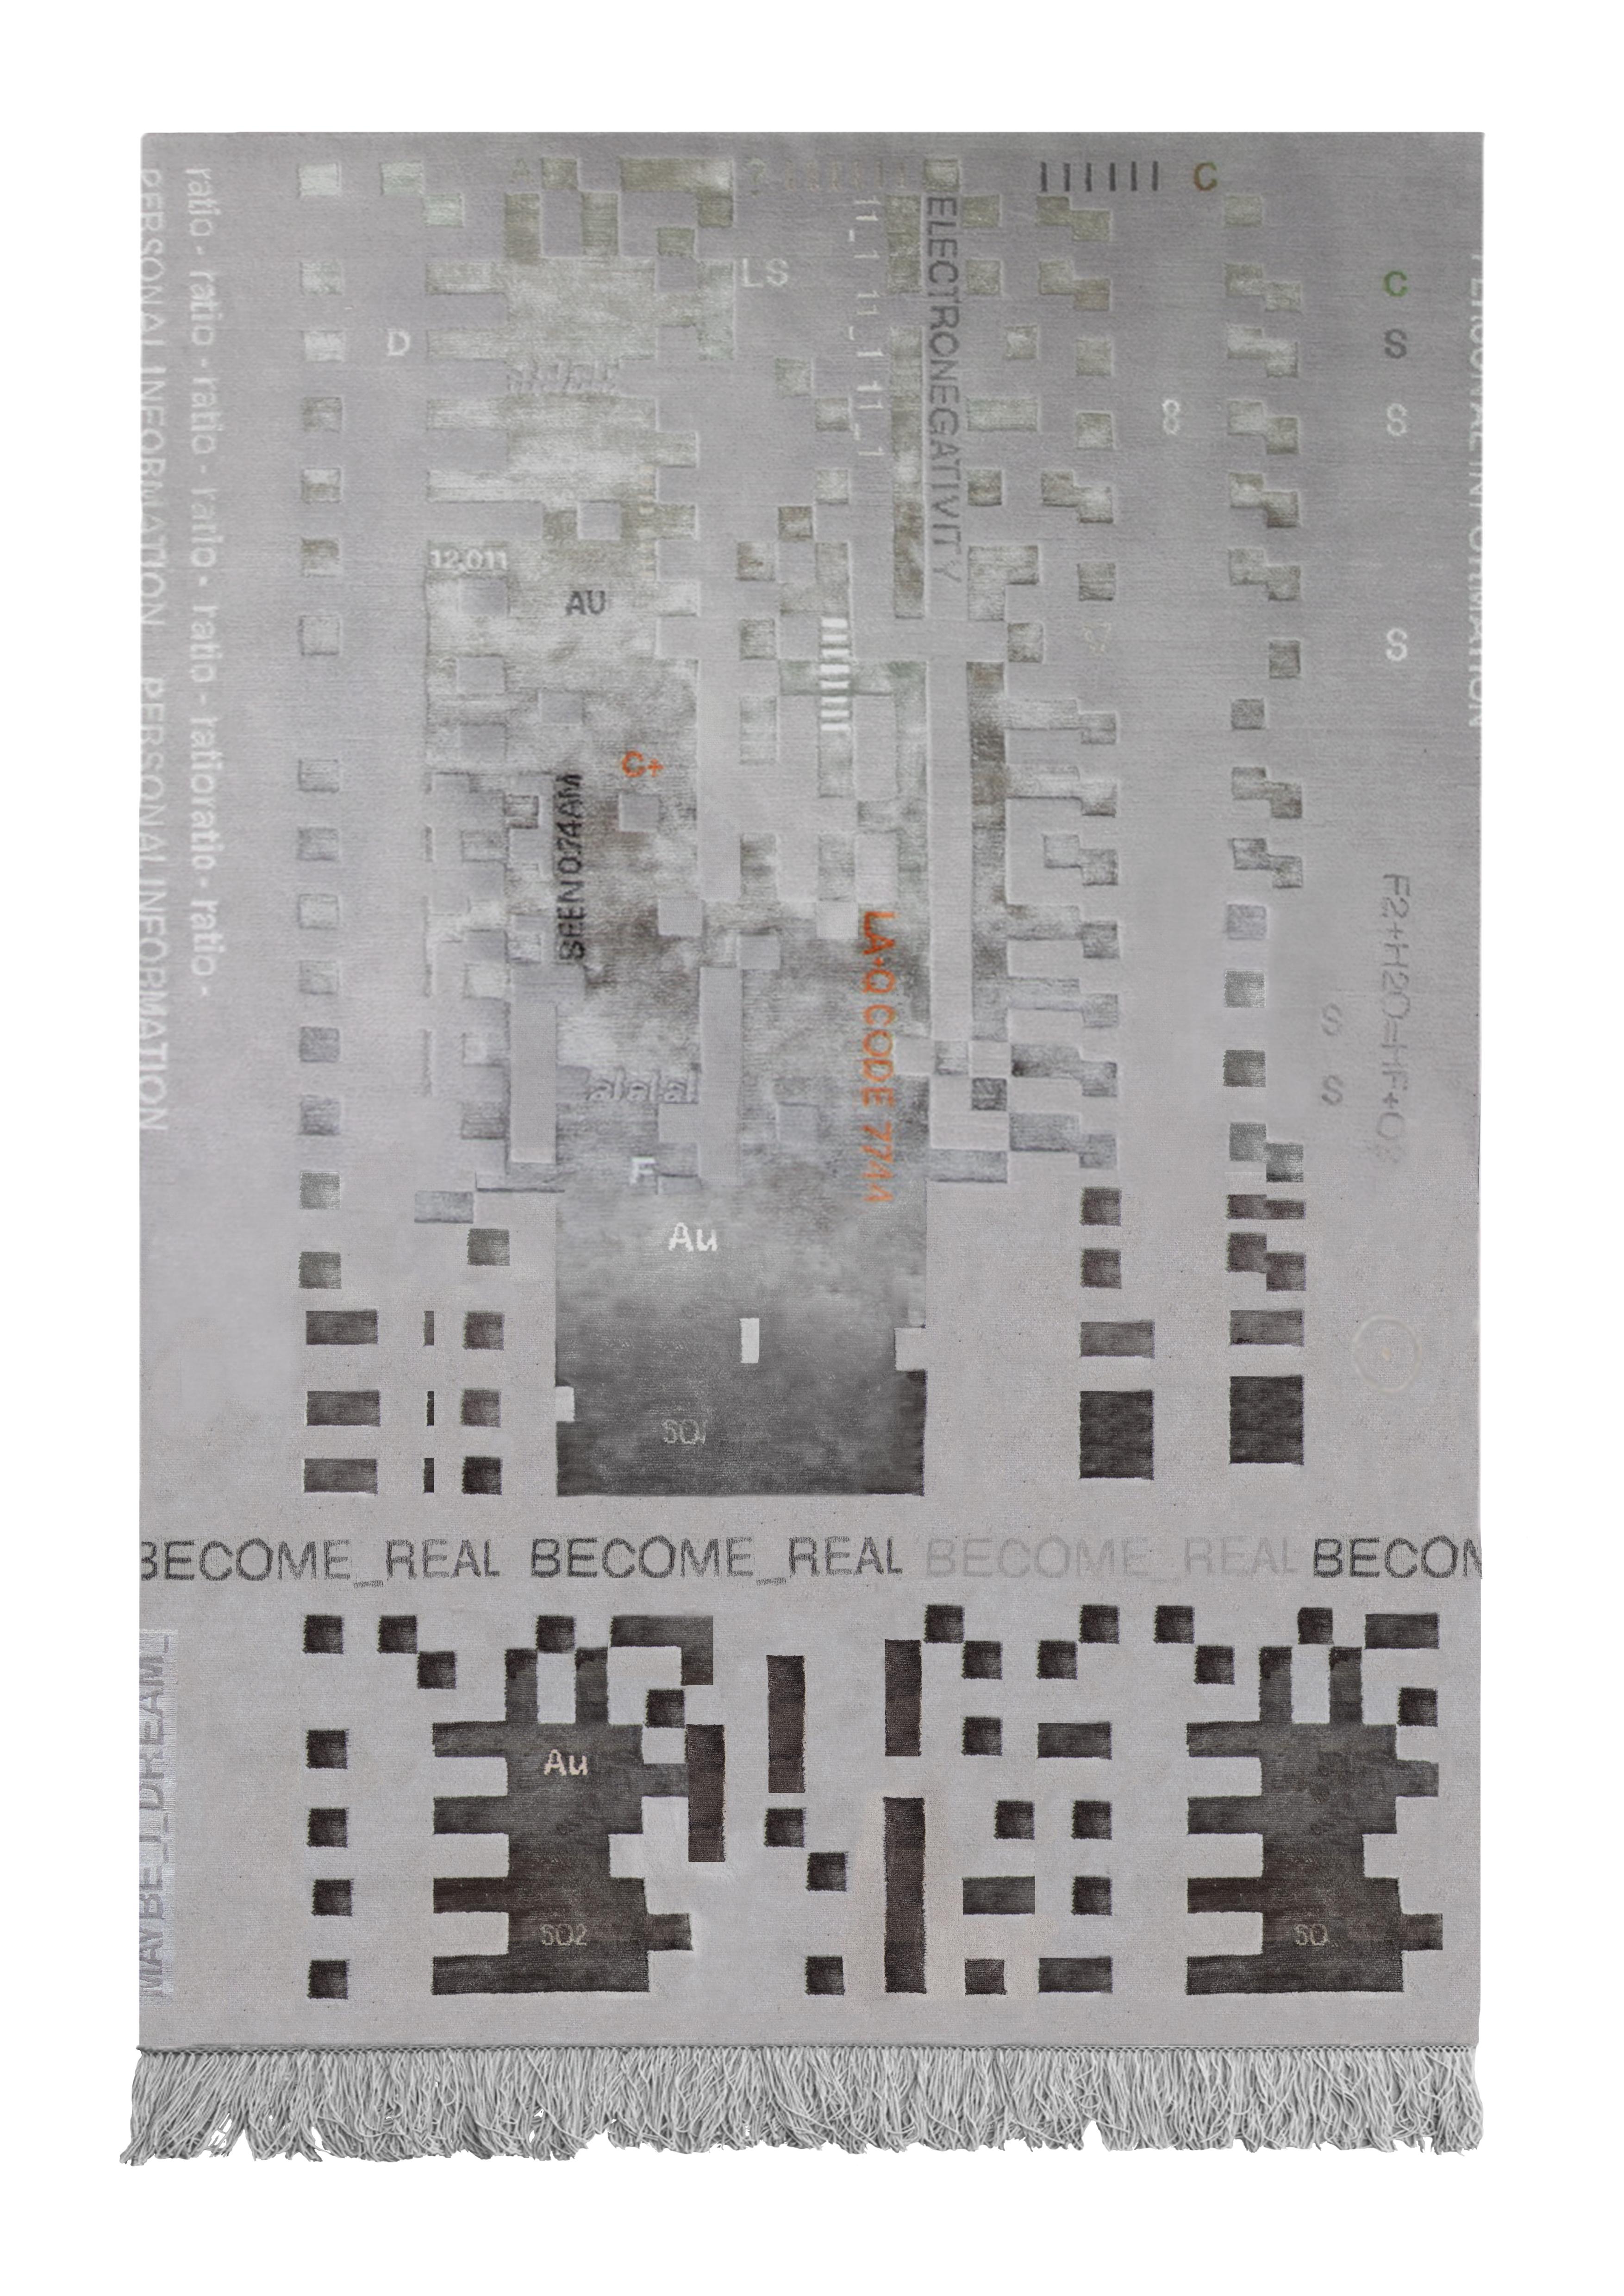 00.03 handgeknüpfter teppich von Laroque Studio
Handgeknüpft in Nepal
Abmessungen: 180x270 cm
MATERIALIEN: chinesische Seide / Wolle
Qualität: 100 Knoten / Quadratzoll

Es wäre fast unmöglich, nur eine Idee zu nennen, die die Collection 00